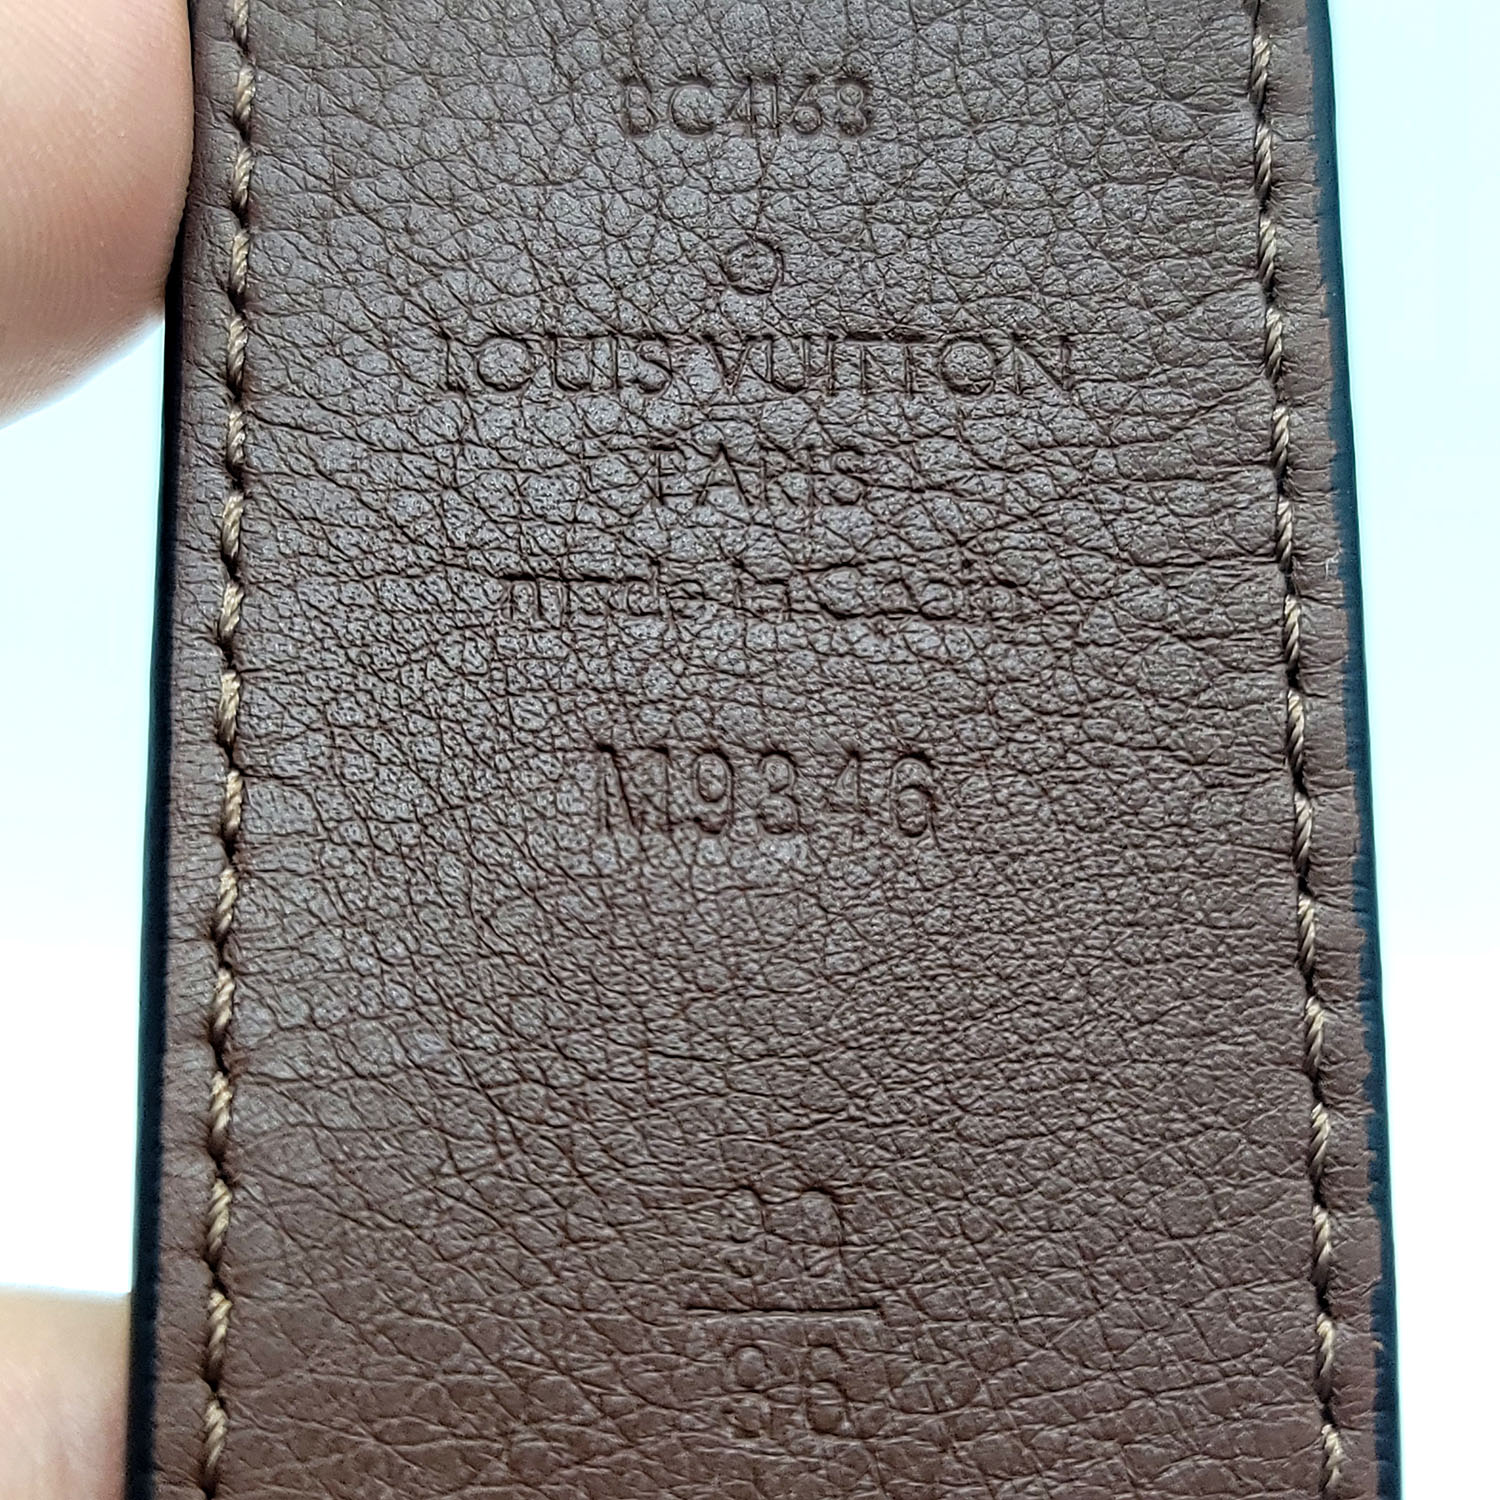 Louis Vuitton 90/36 Monogram Reversible Inventeur Belt